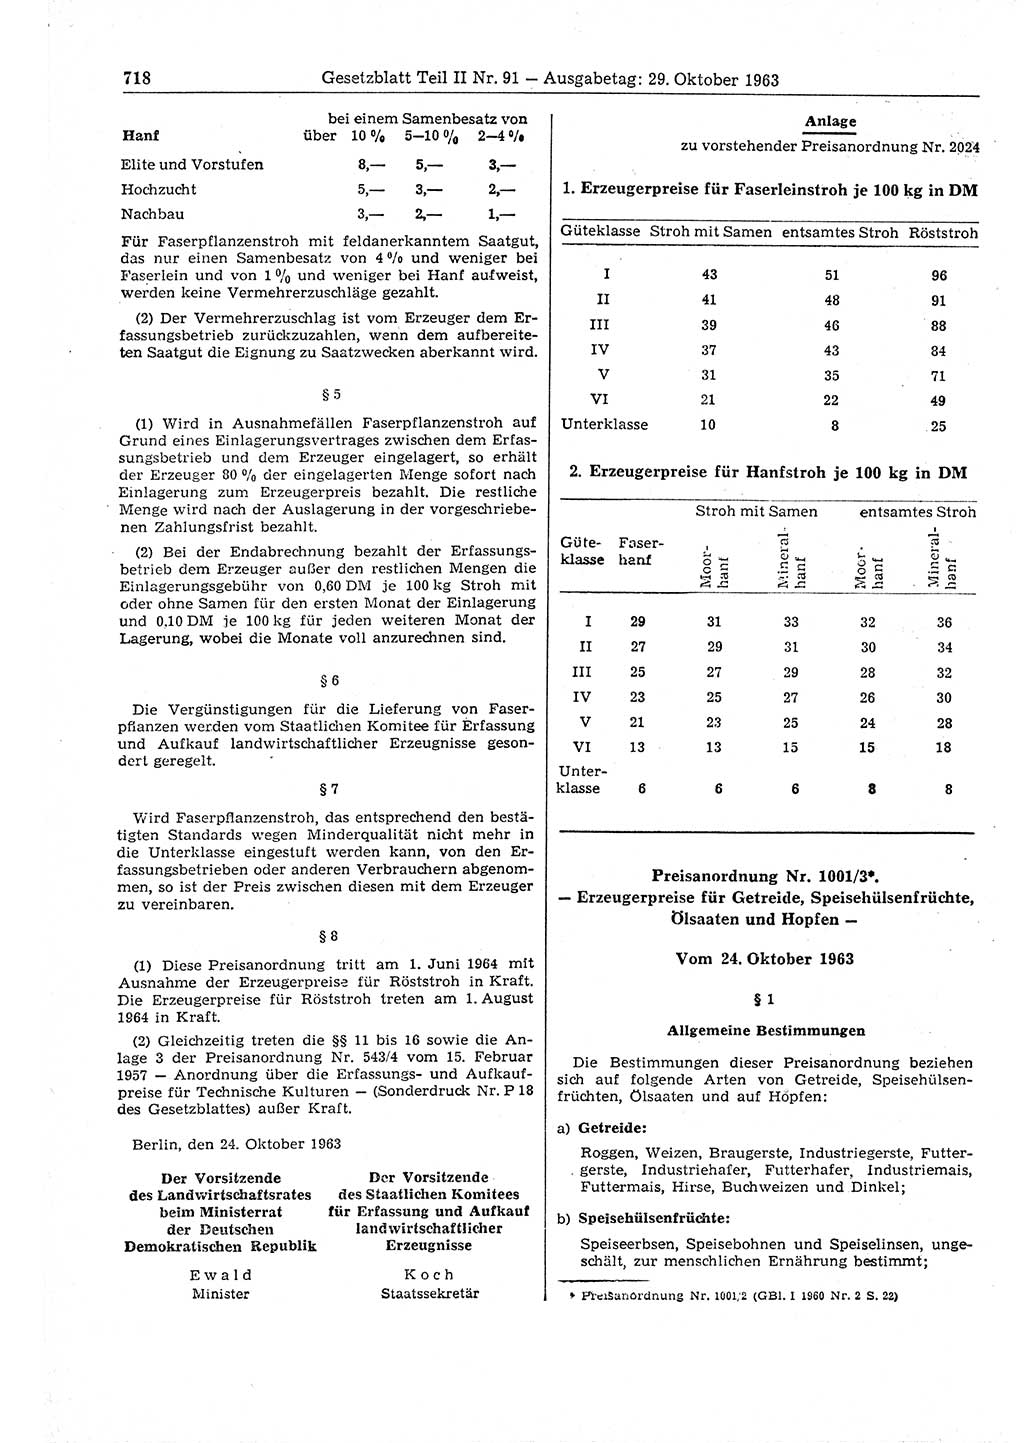 Gesetzblatt (GBl.) der Deutschen Demokratischen Republik (DDR) Teil ⅠⅠ 1963, Seite 718 (GBl. DDR ⅠⅠ 1963, S. 718)